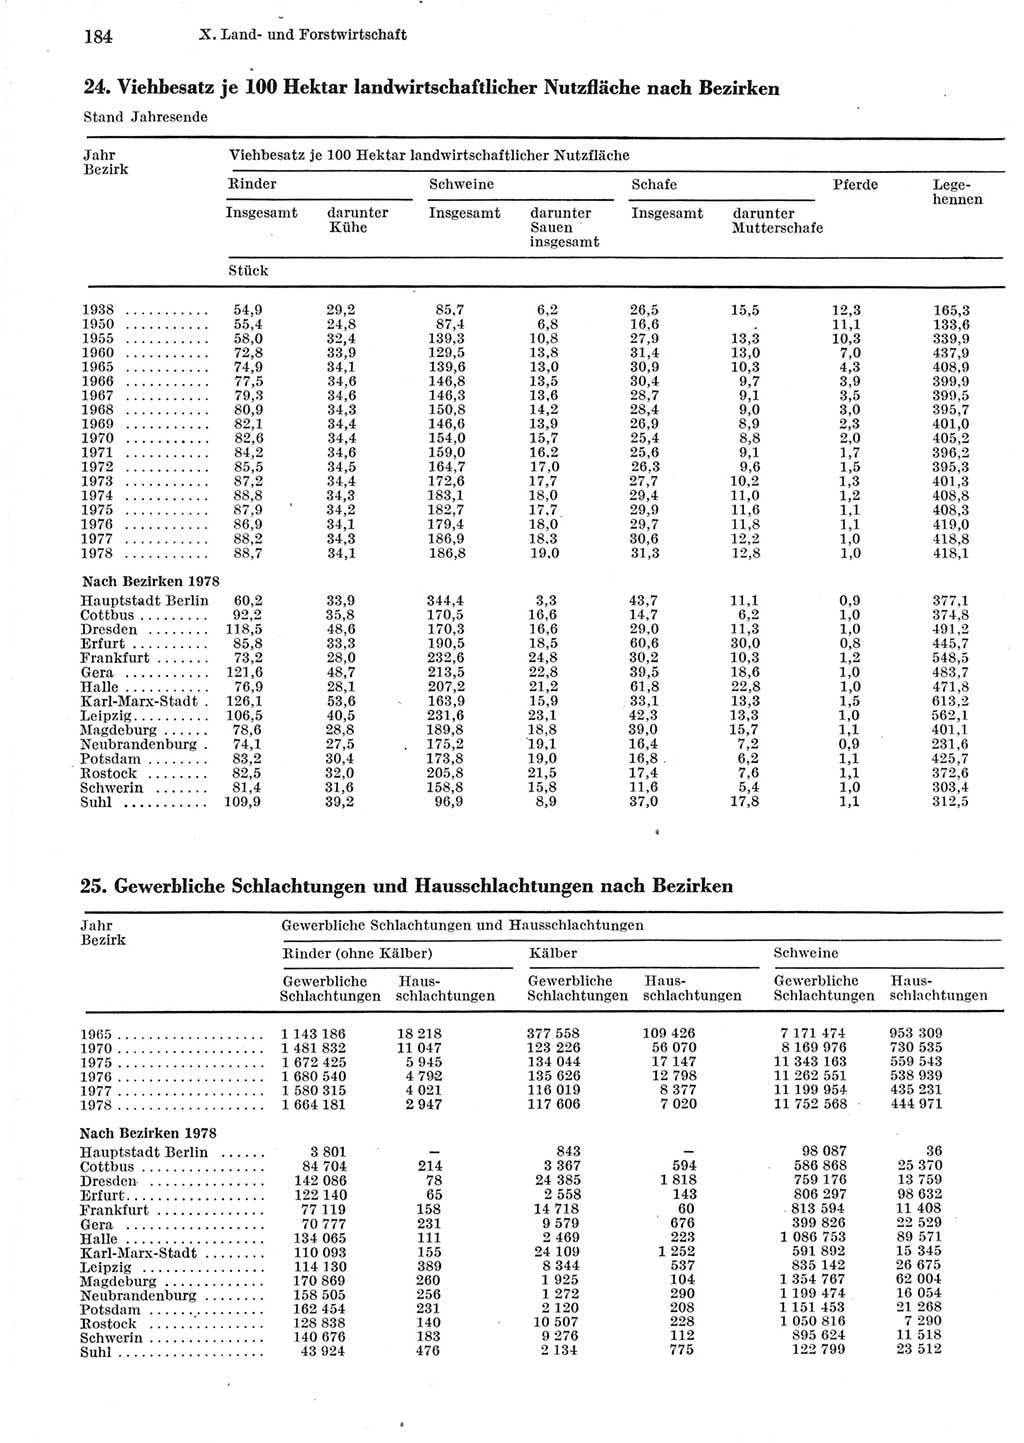 Statistisches Jahrbuch der Deutschen Demokratischen Republik (DDR) 1979, Seite 184 (Stat. Jb. DDR 1979, S. 184)